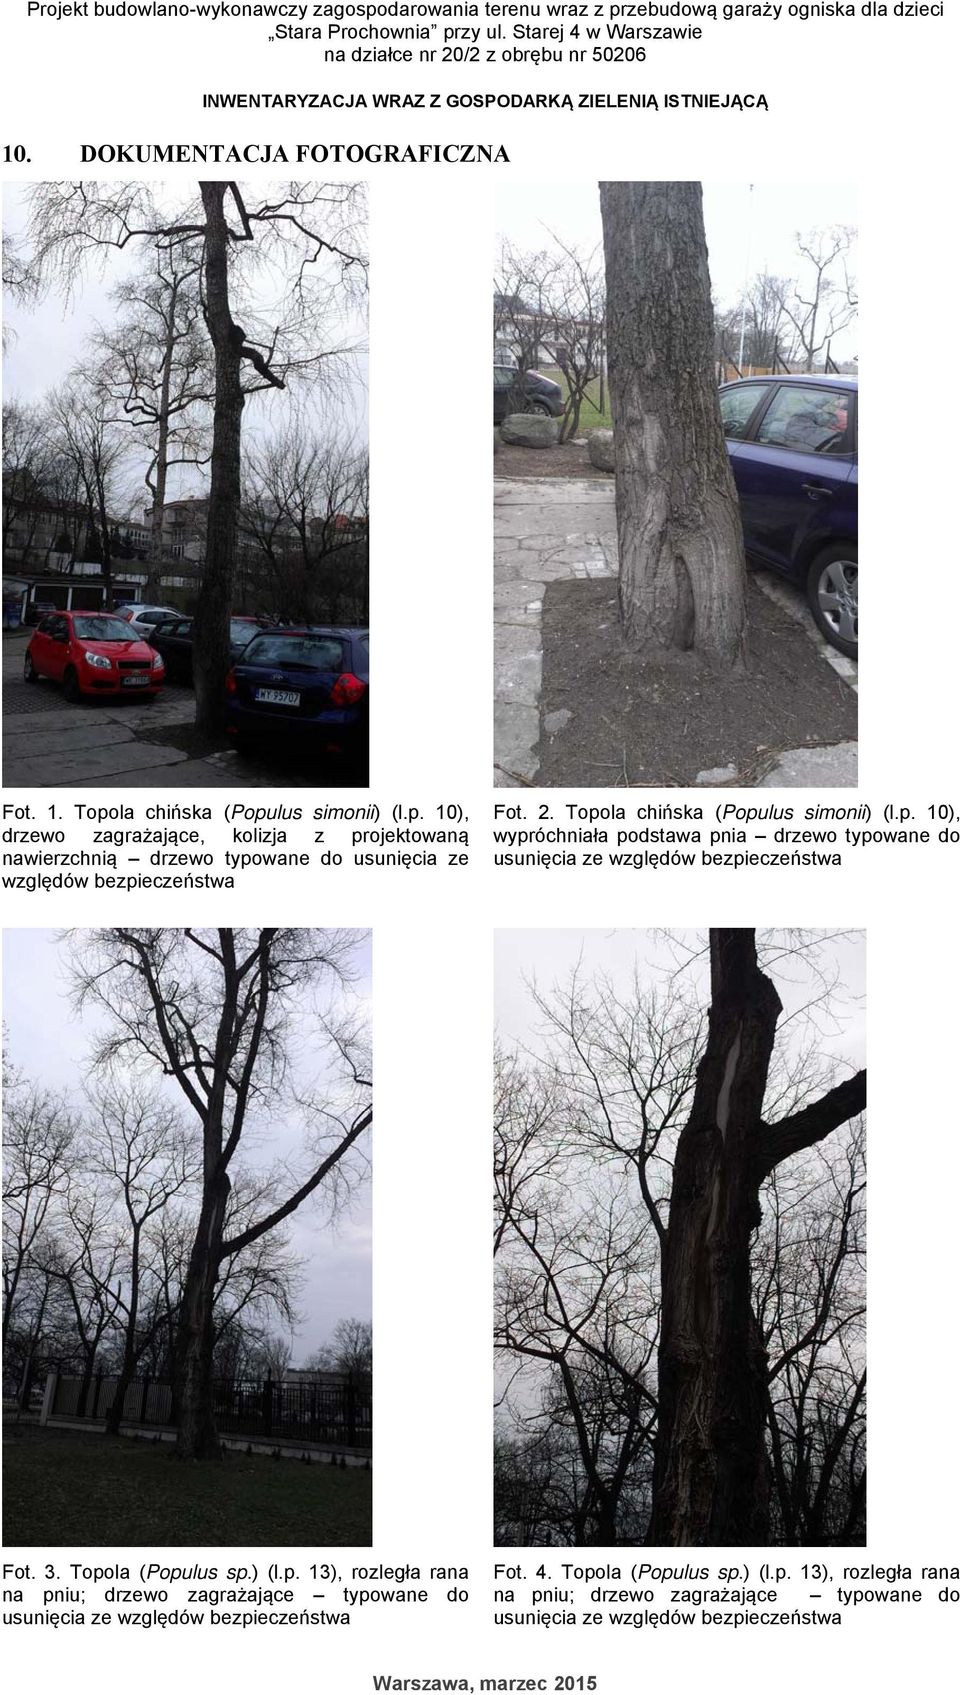 la chińska (Populus simonii) (l.p. 10), drzewo zagrażające, kolizja z projektowaną nawierzchnią drzewo typowane do usunięcia ze względów bezpieczeństwa Fot. 2. Topola chińska (Populus simonii) (l.p. 10), wypróchniała podstawa pnia drzewo typowane do usunięcia ze względów bezpieczeństwa Fot.